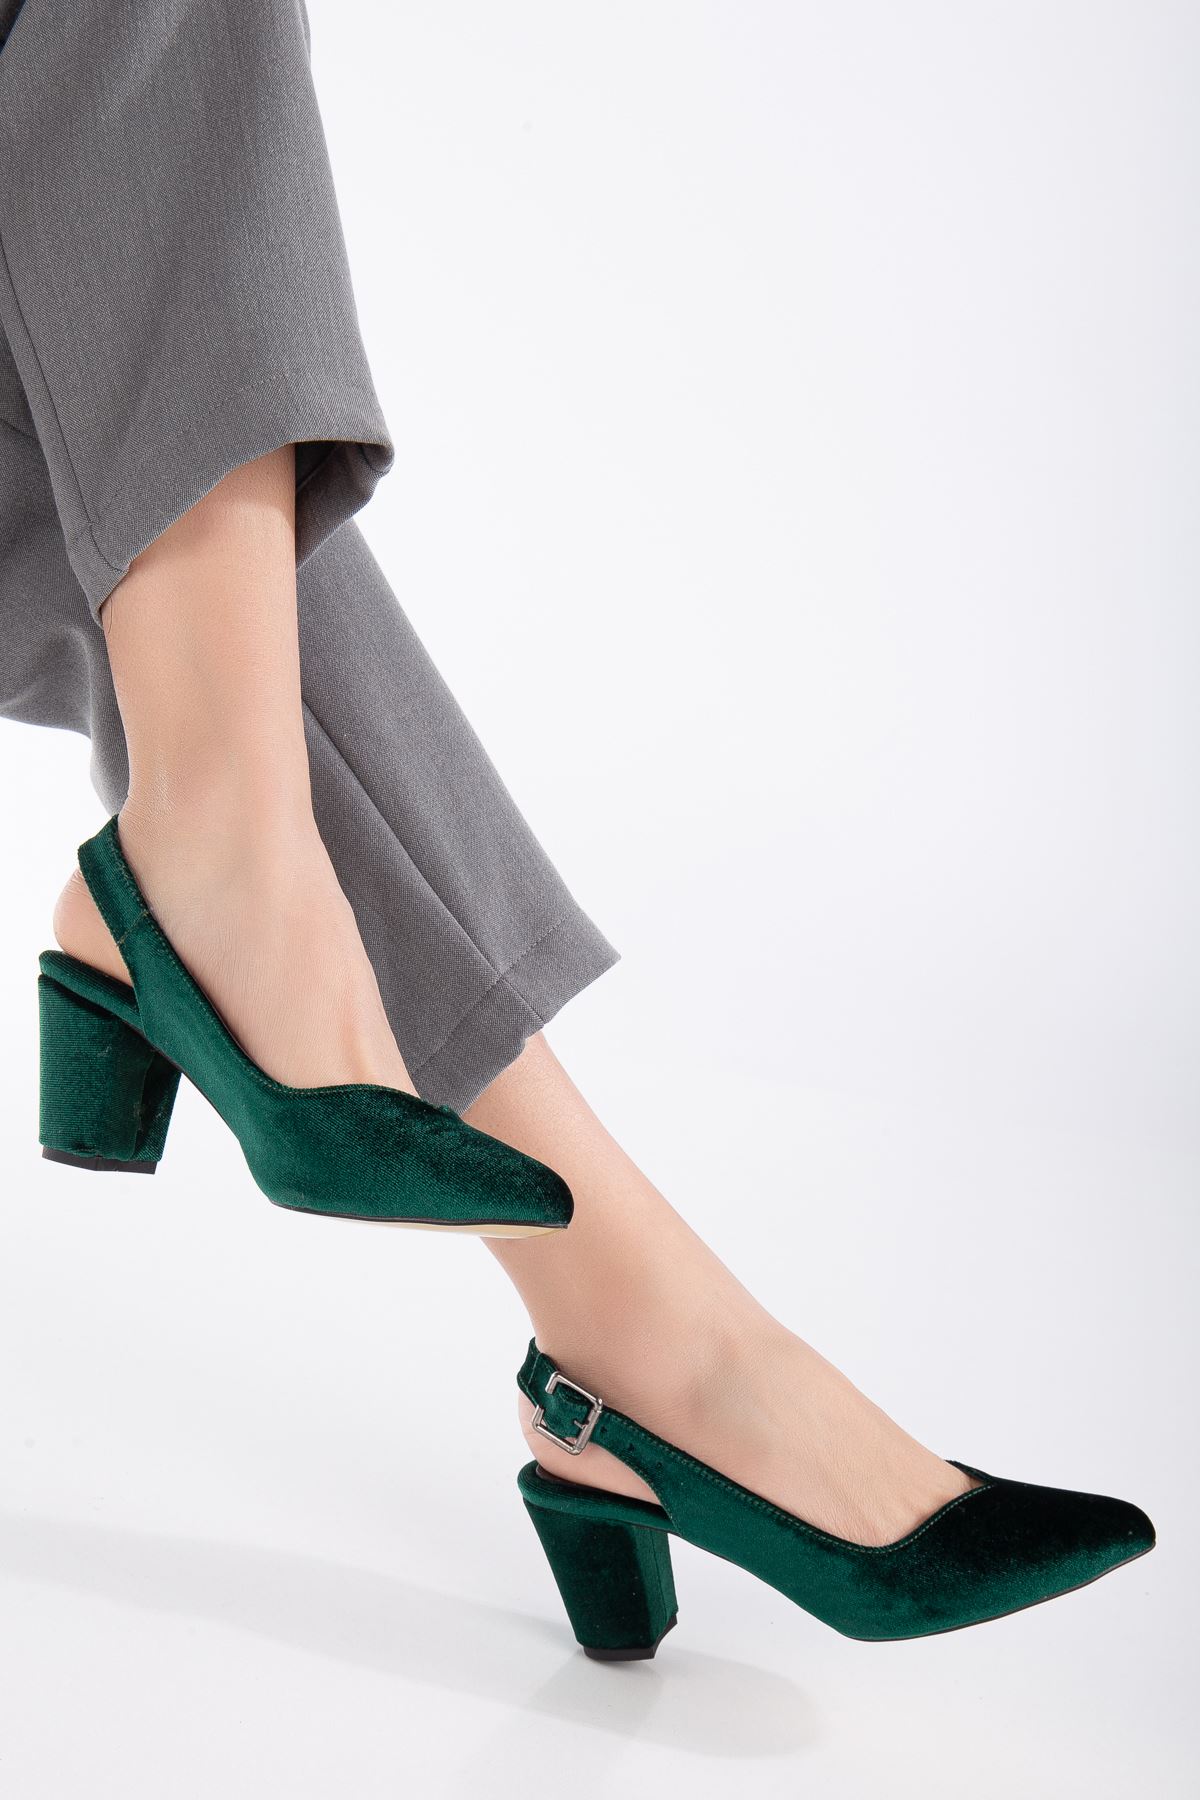 Milika Haki Yeşili Kadife Sivri Burunlu Topuklu Kadın Ayakkabı   